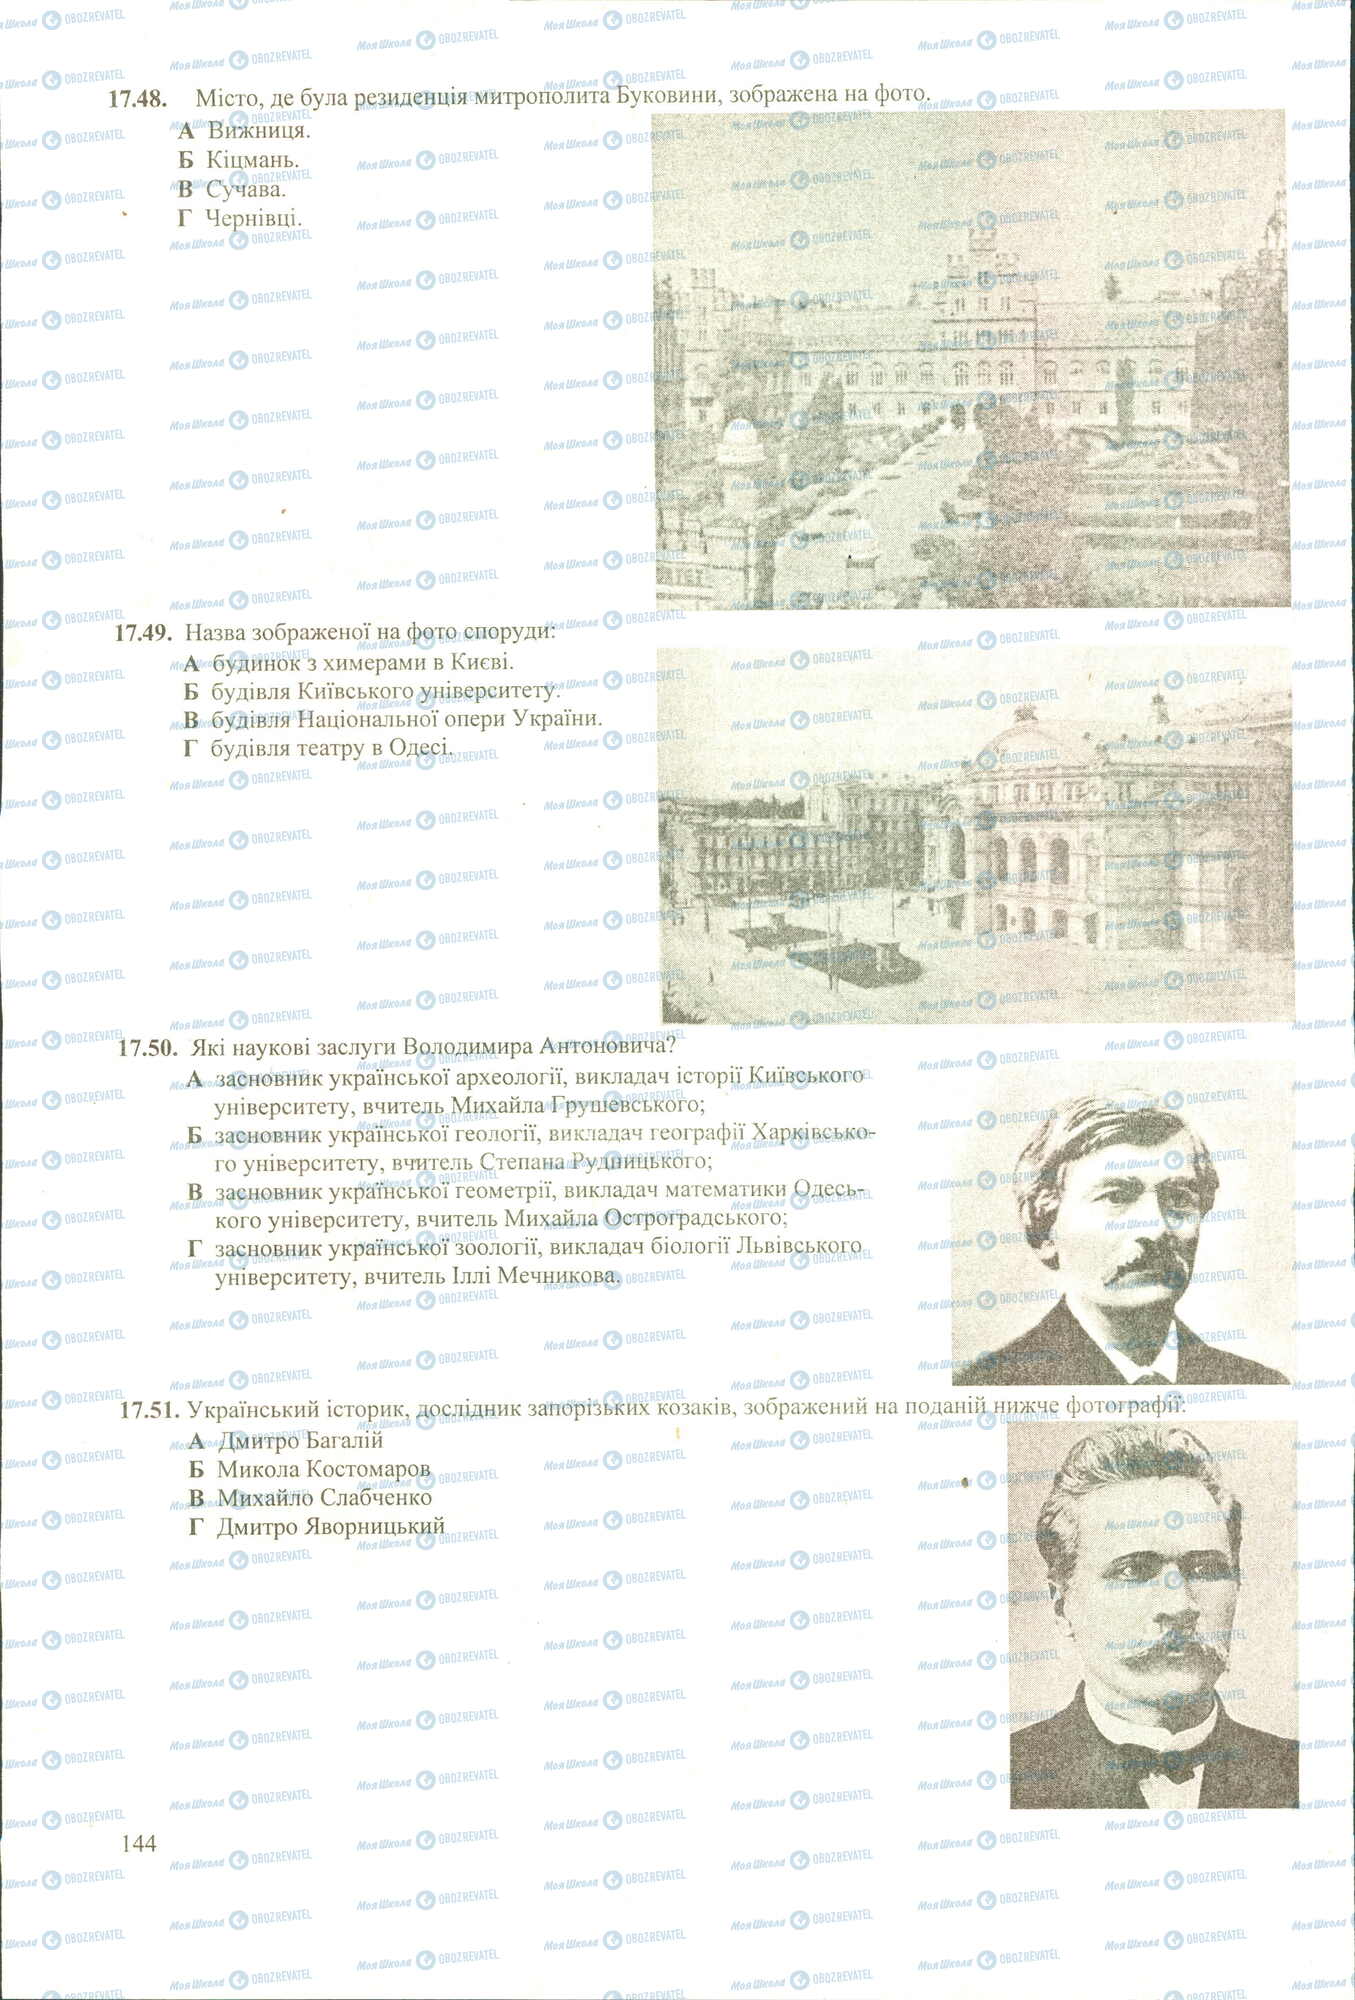 ЗНО История Украины 11 класс страница 48-51